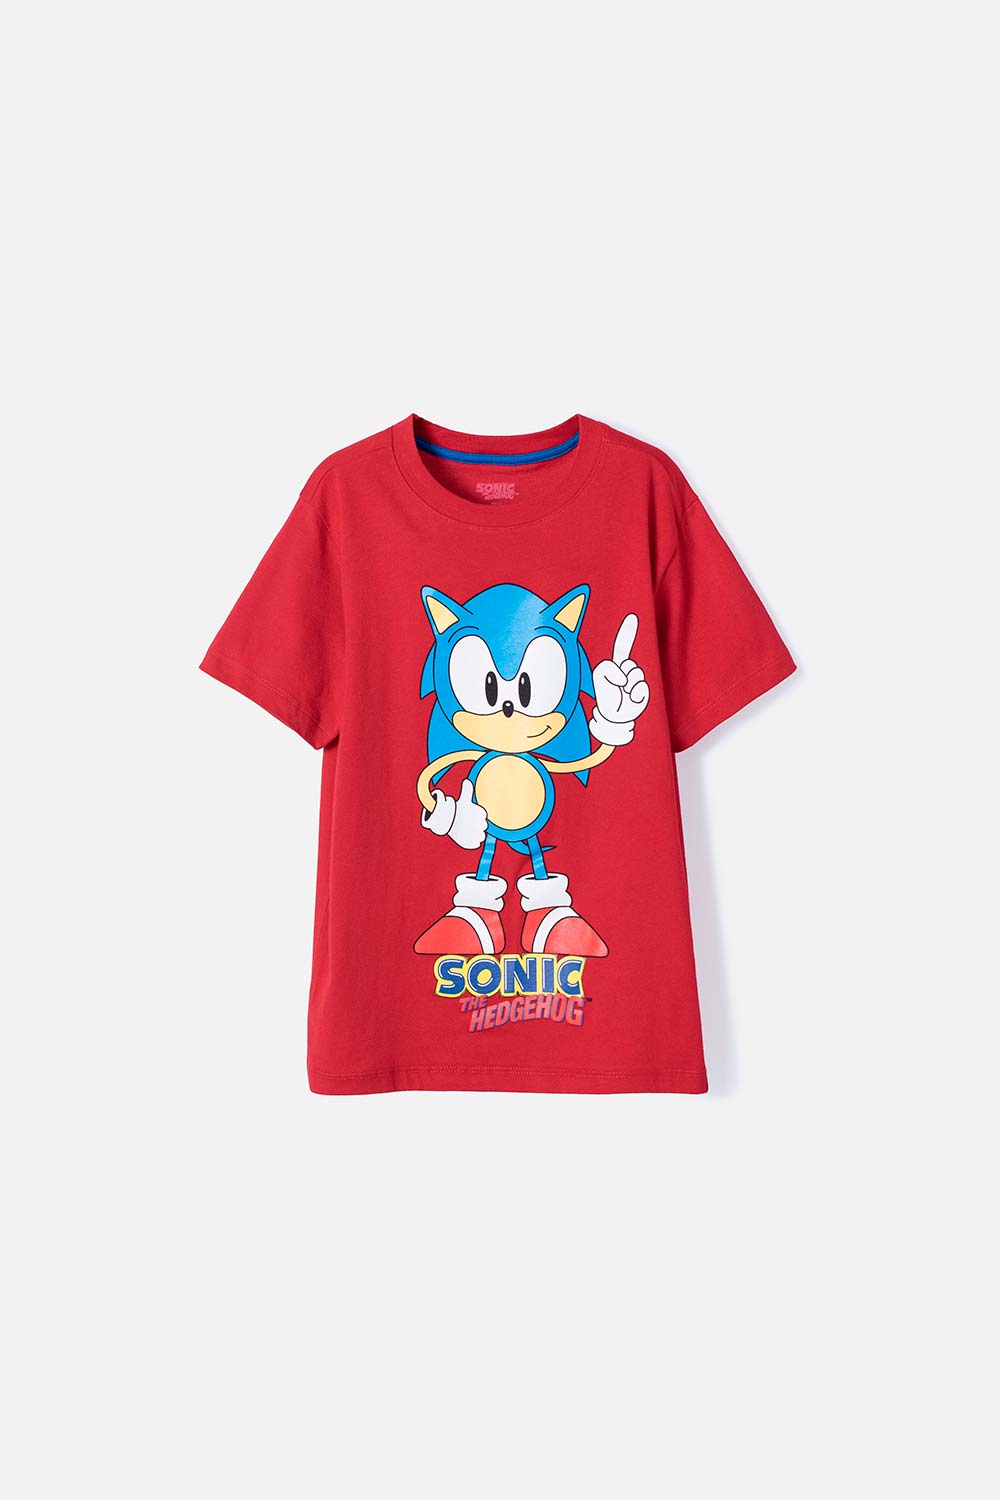 Camiseta de Sonic manga corta roja para niño - Ponemos la Fantasía!